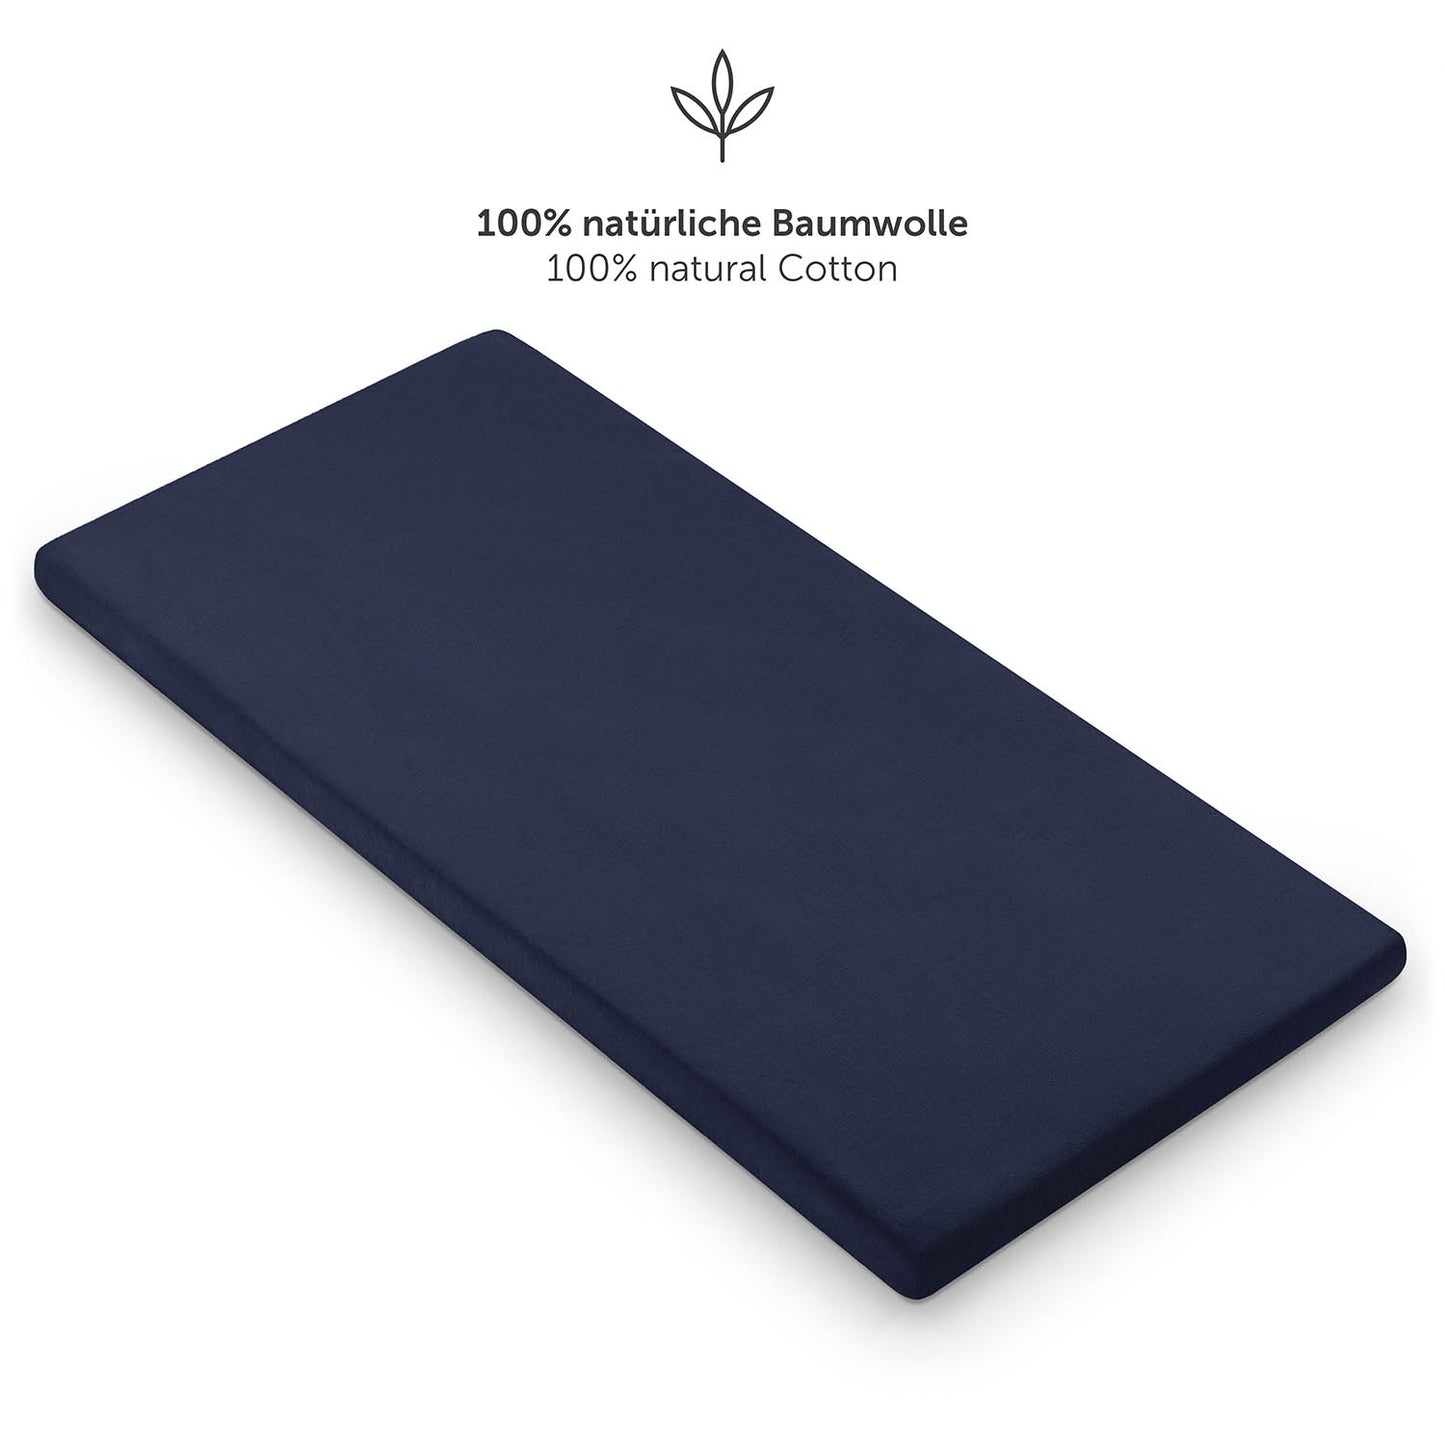 dunkelblauen Spannbettlaken aus 100% natürlicher Baumwolle für ein Kinderbett.